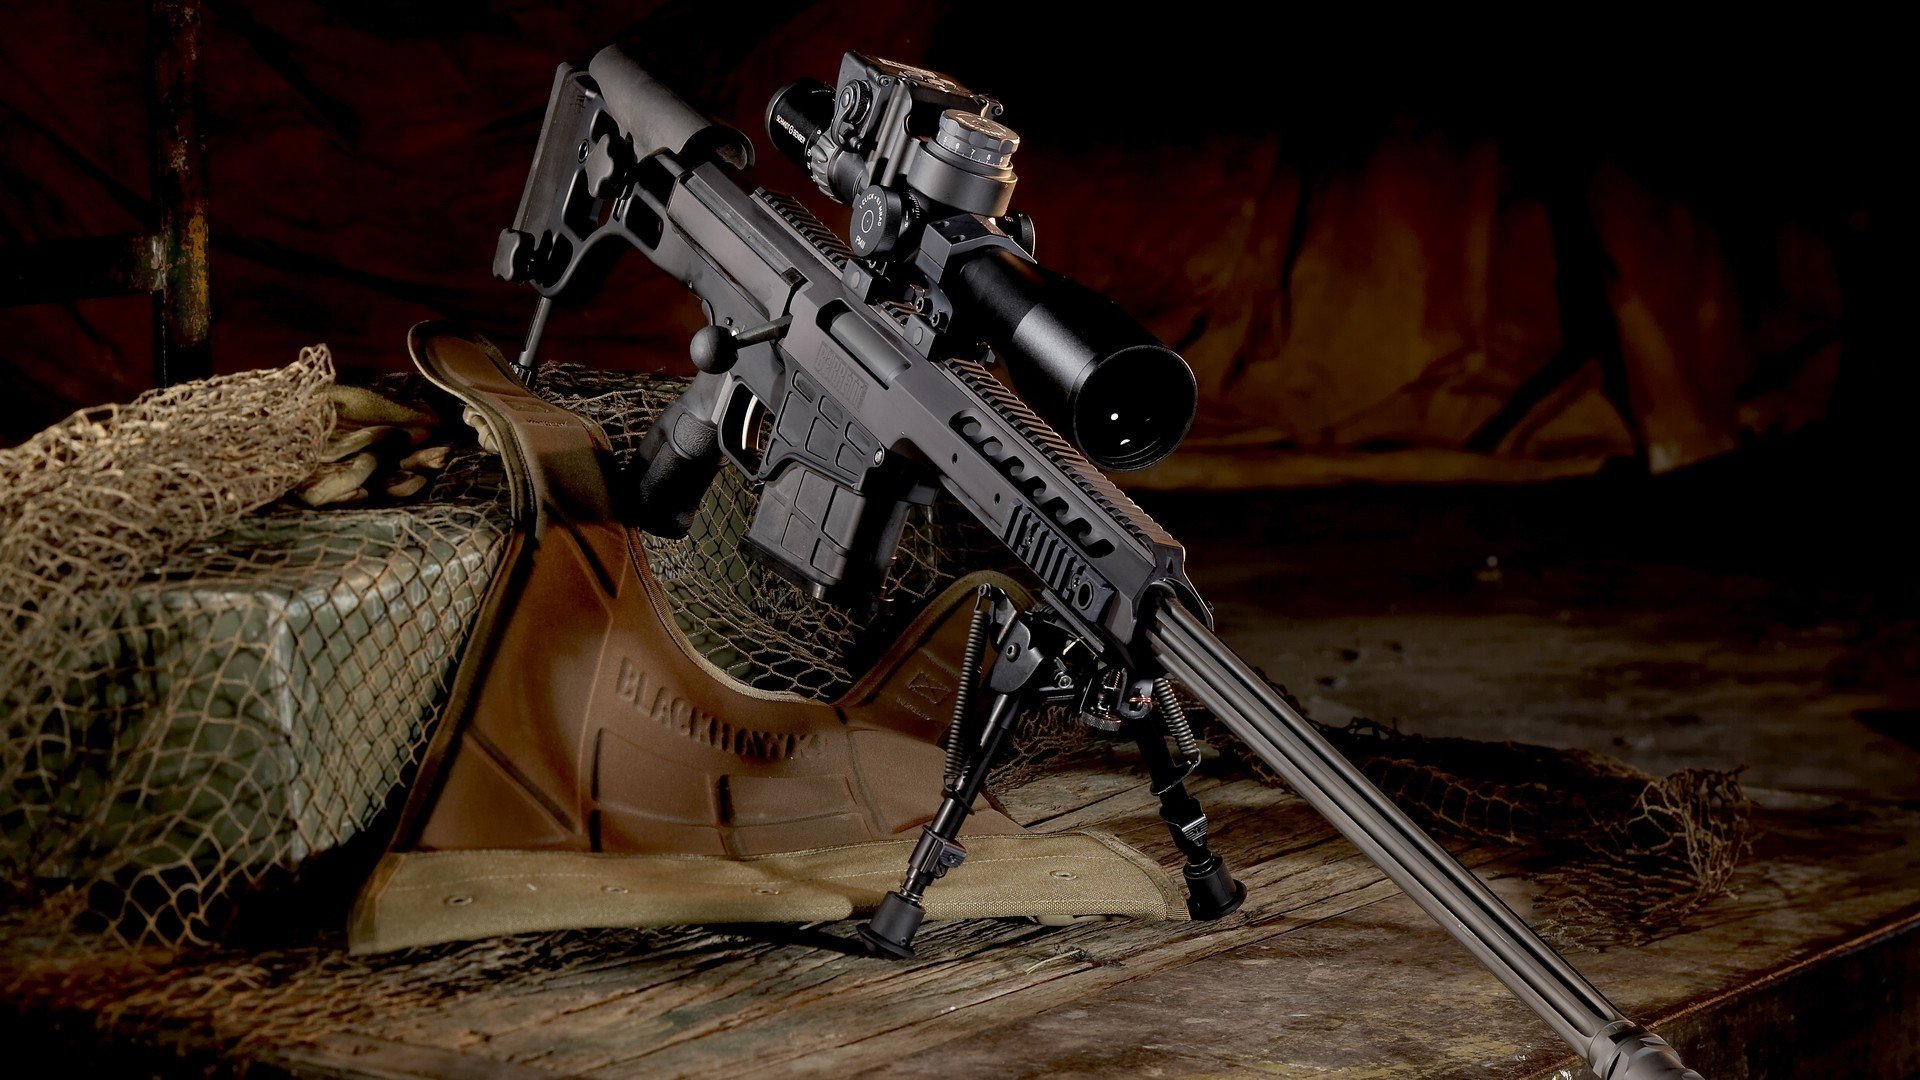 Barrett M98b Sniper Rifle HD Wallpaper Desktop And